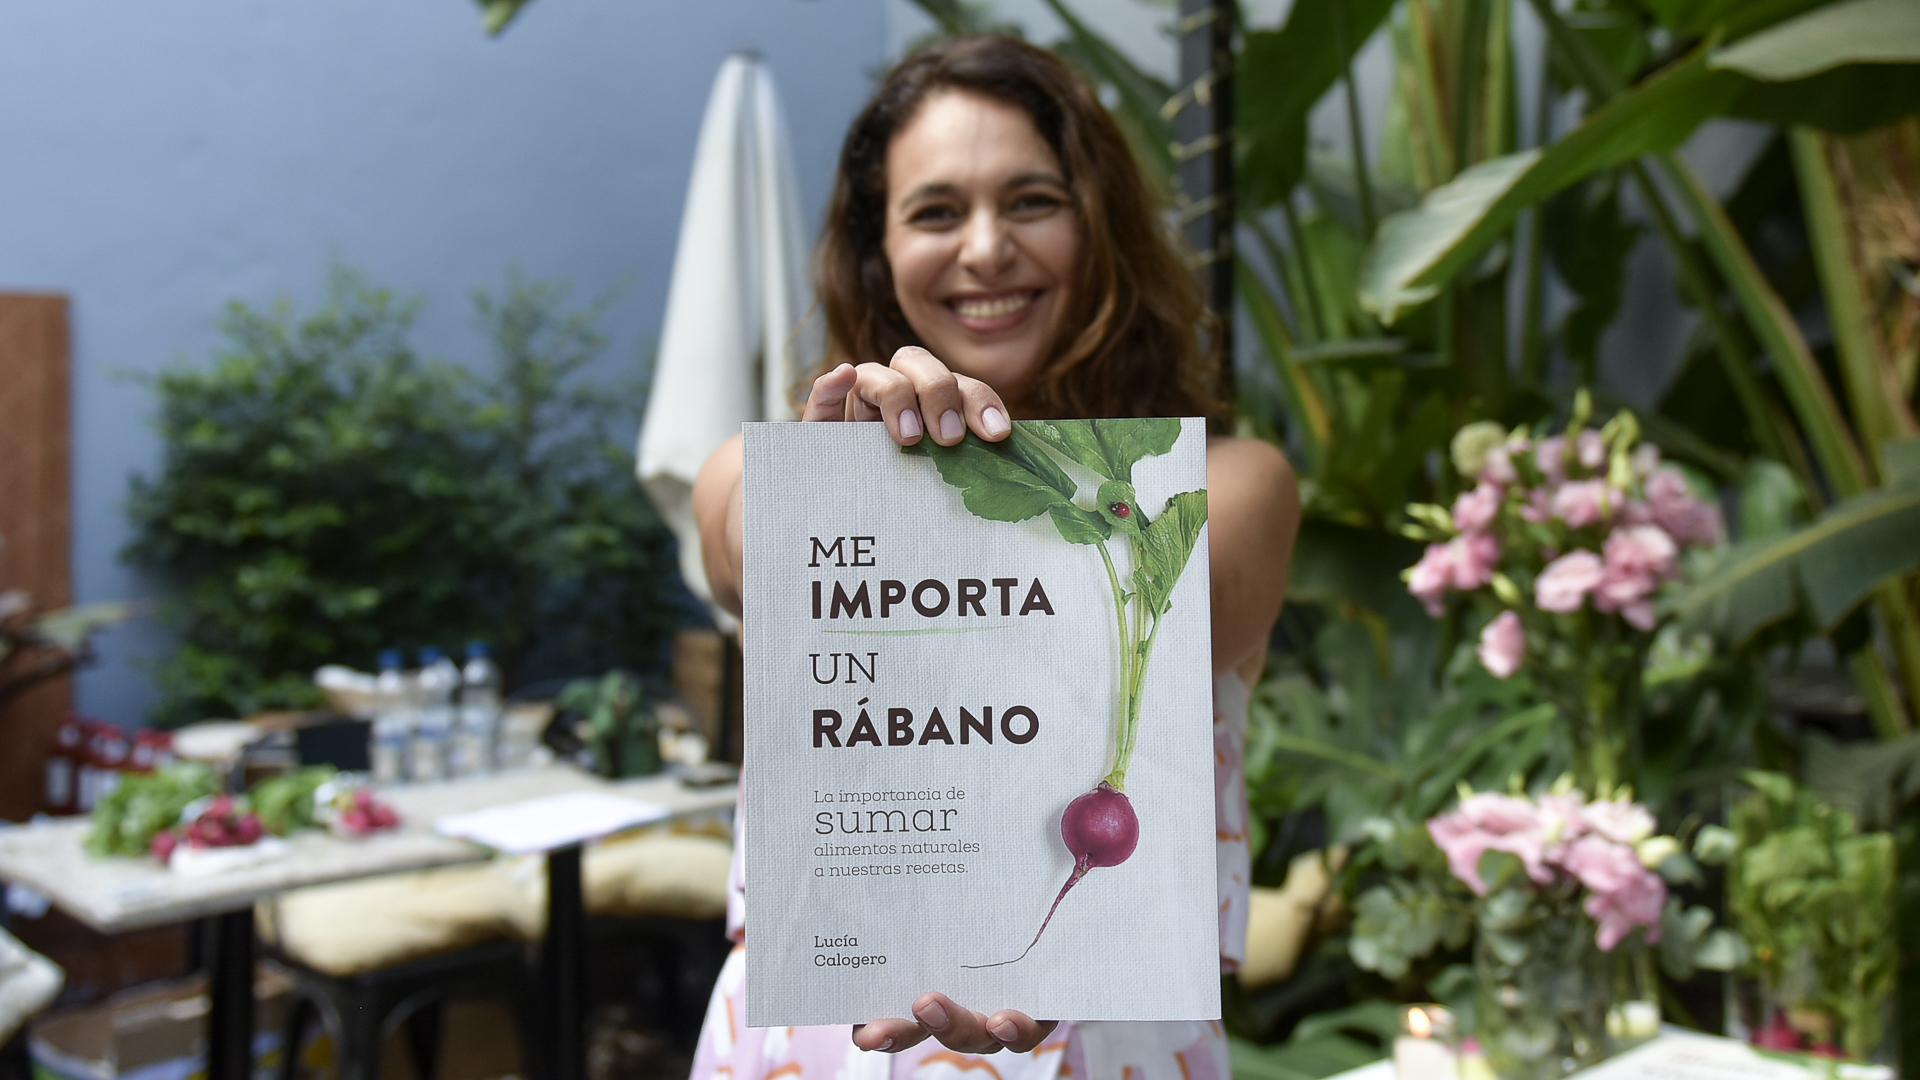 Lucía Calogero y su libro "Me importa un rábano", en el que propone la incorporación de más frutas y verduras a la alimentación, sin fundamentalismos ni restricciones (Gustavo Gavotti)